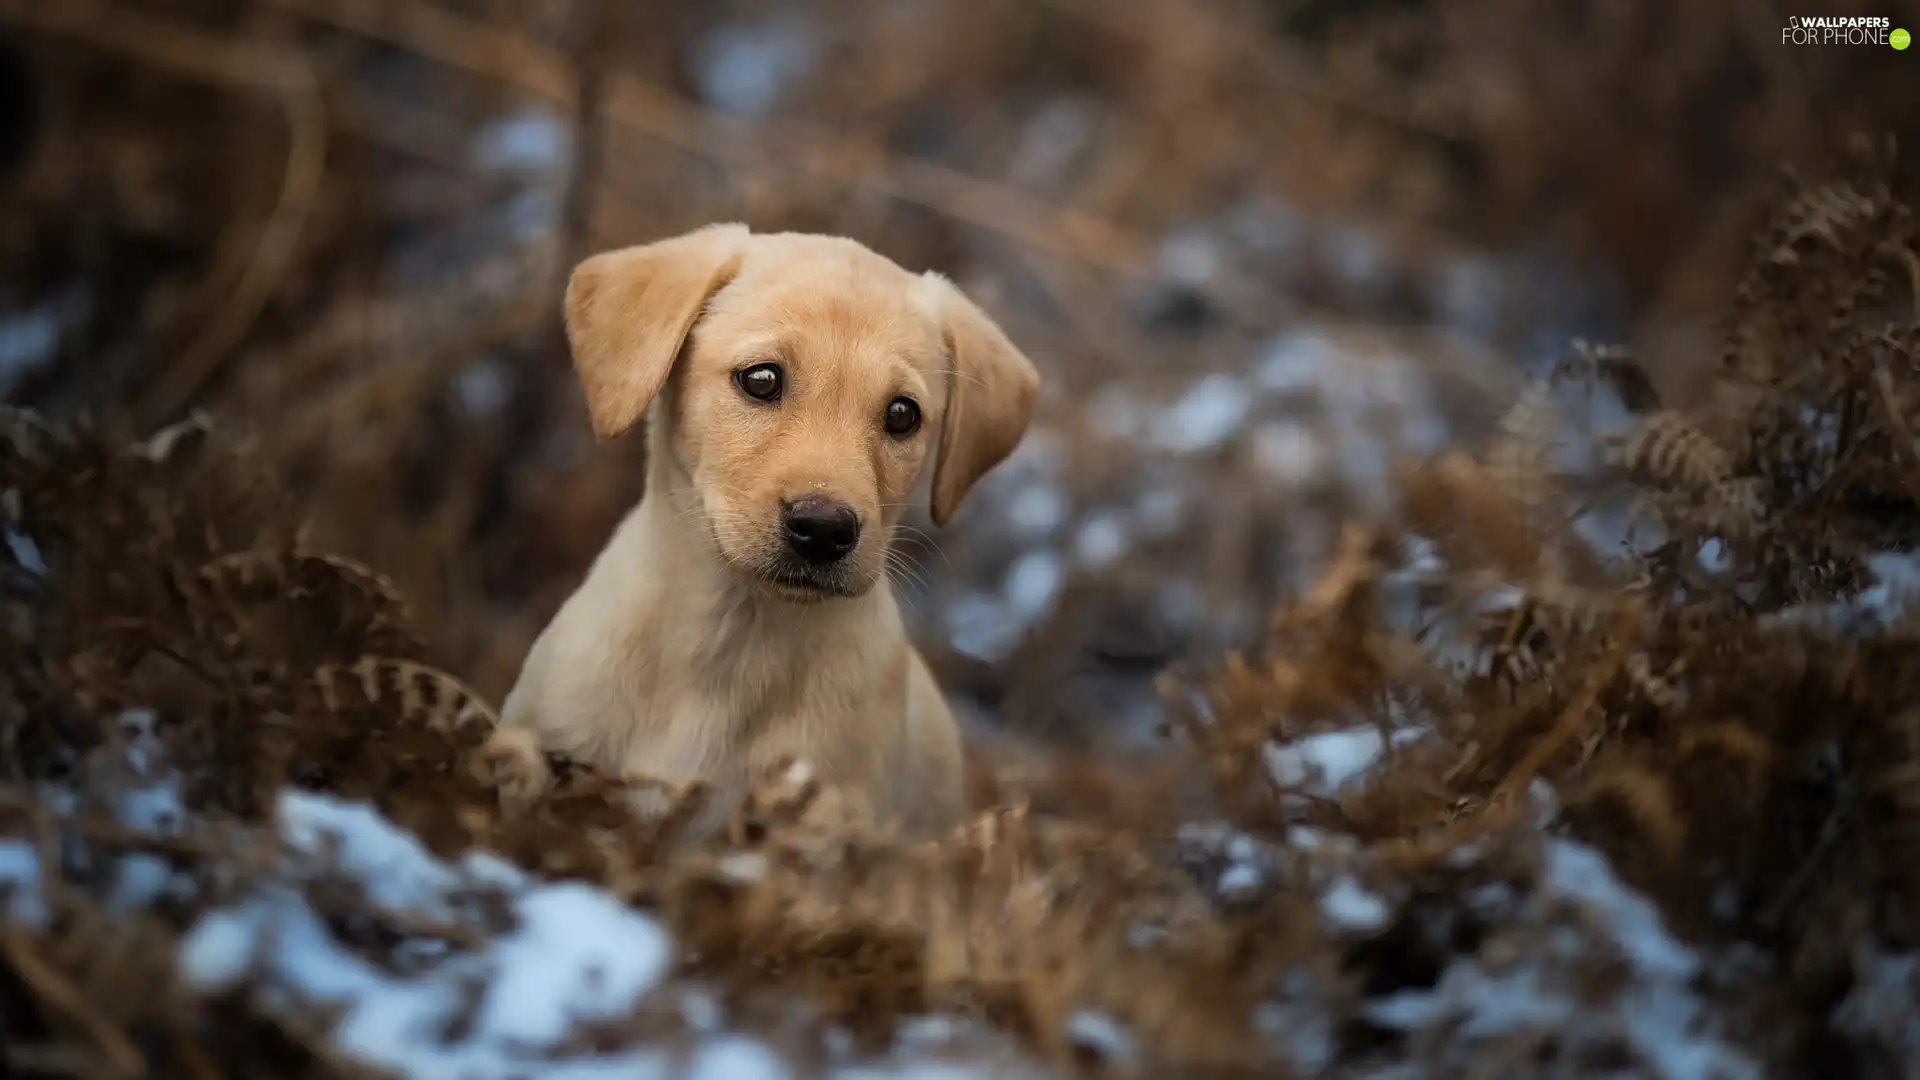 dry, Puppy, Fern, snow, Leaf, Labrador Retriever